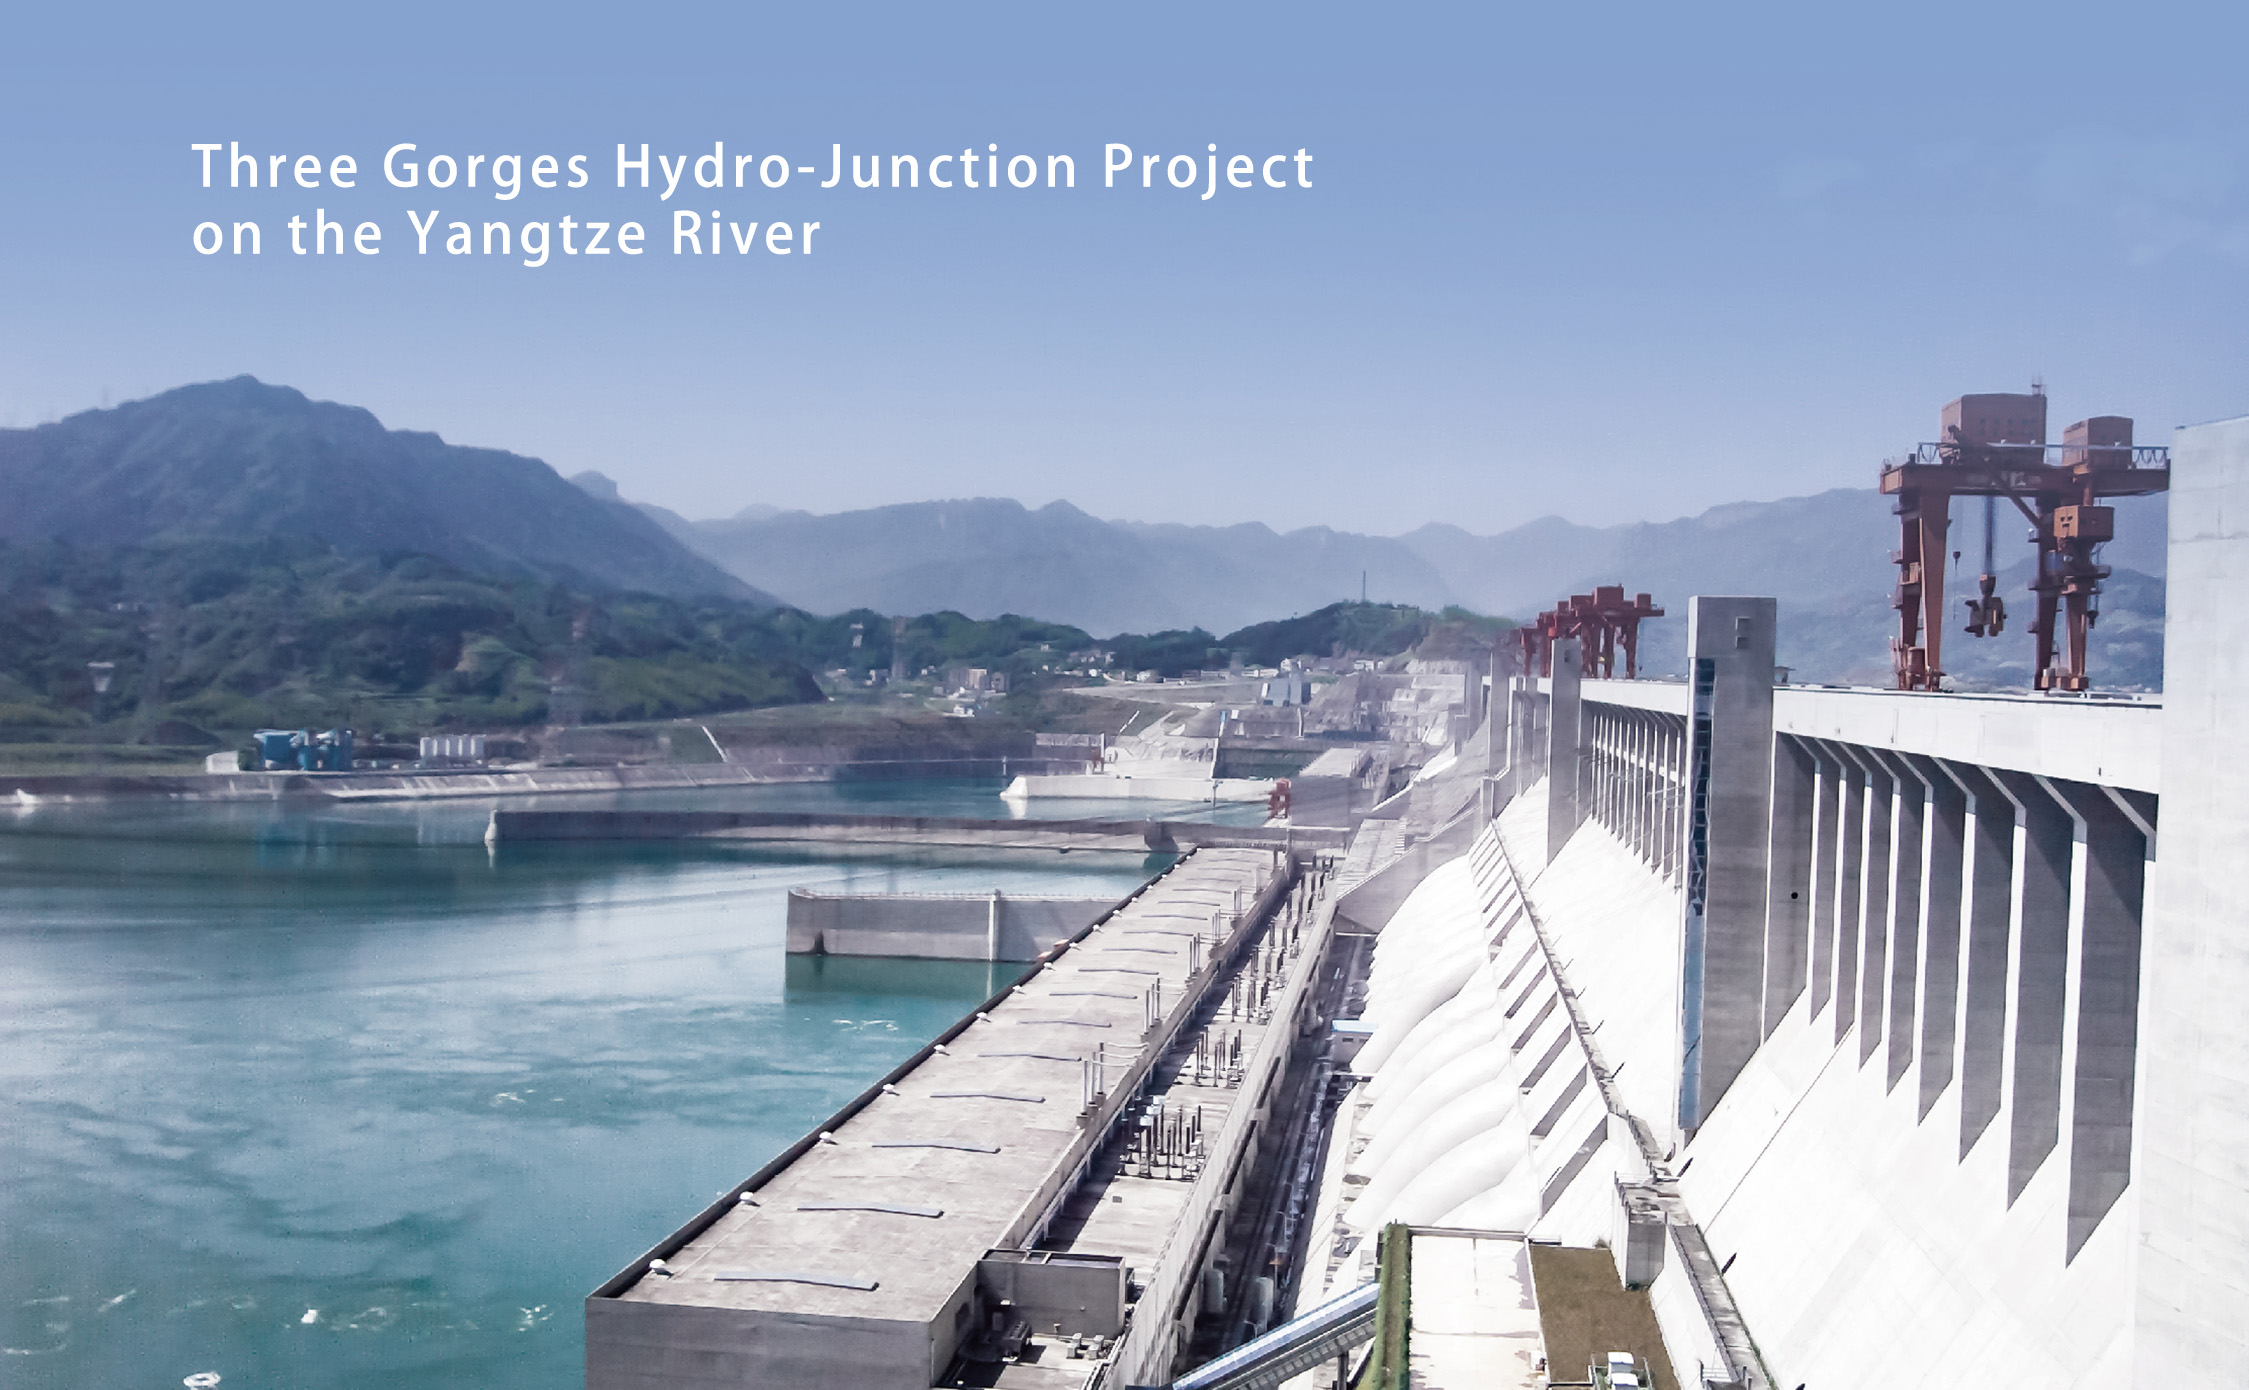 01 当今世界最大的水利发电工程——长江三峡水利枢纽工程.jpg